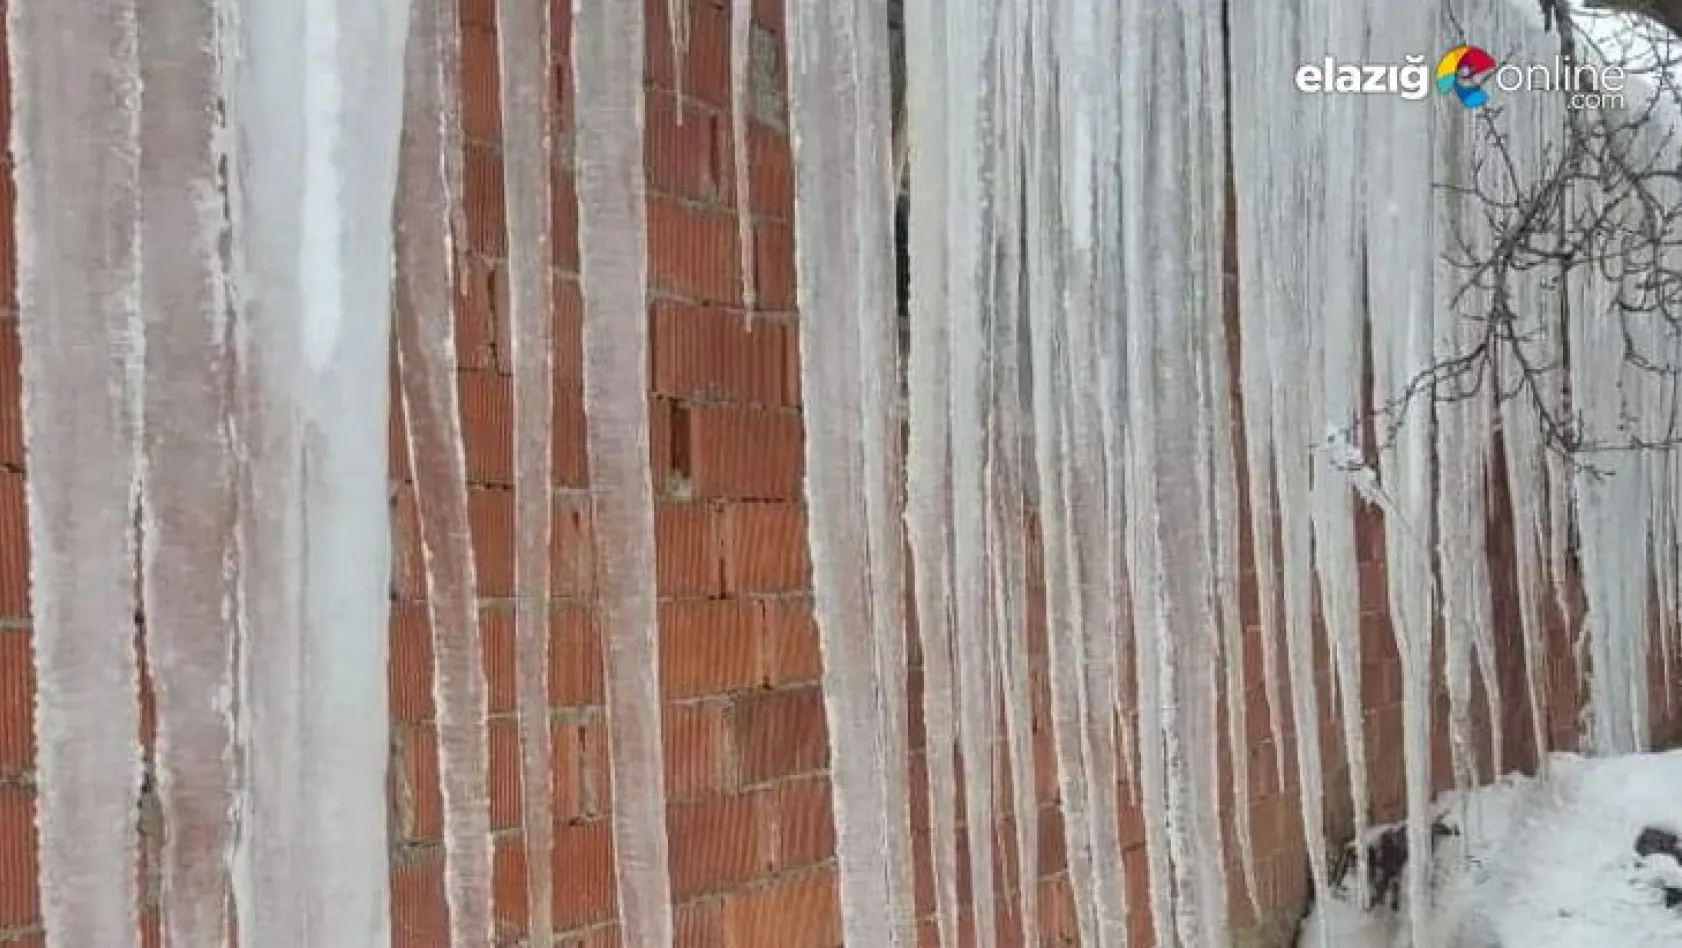 Baskil'de 2 metrelik buz sarkıtları görenleri şaşırtıyor